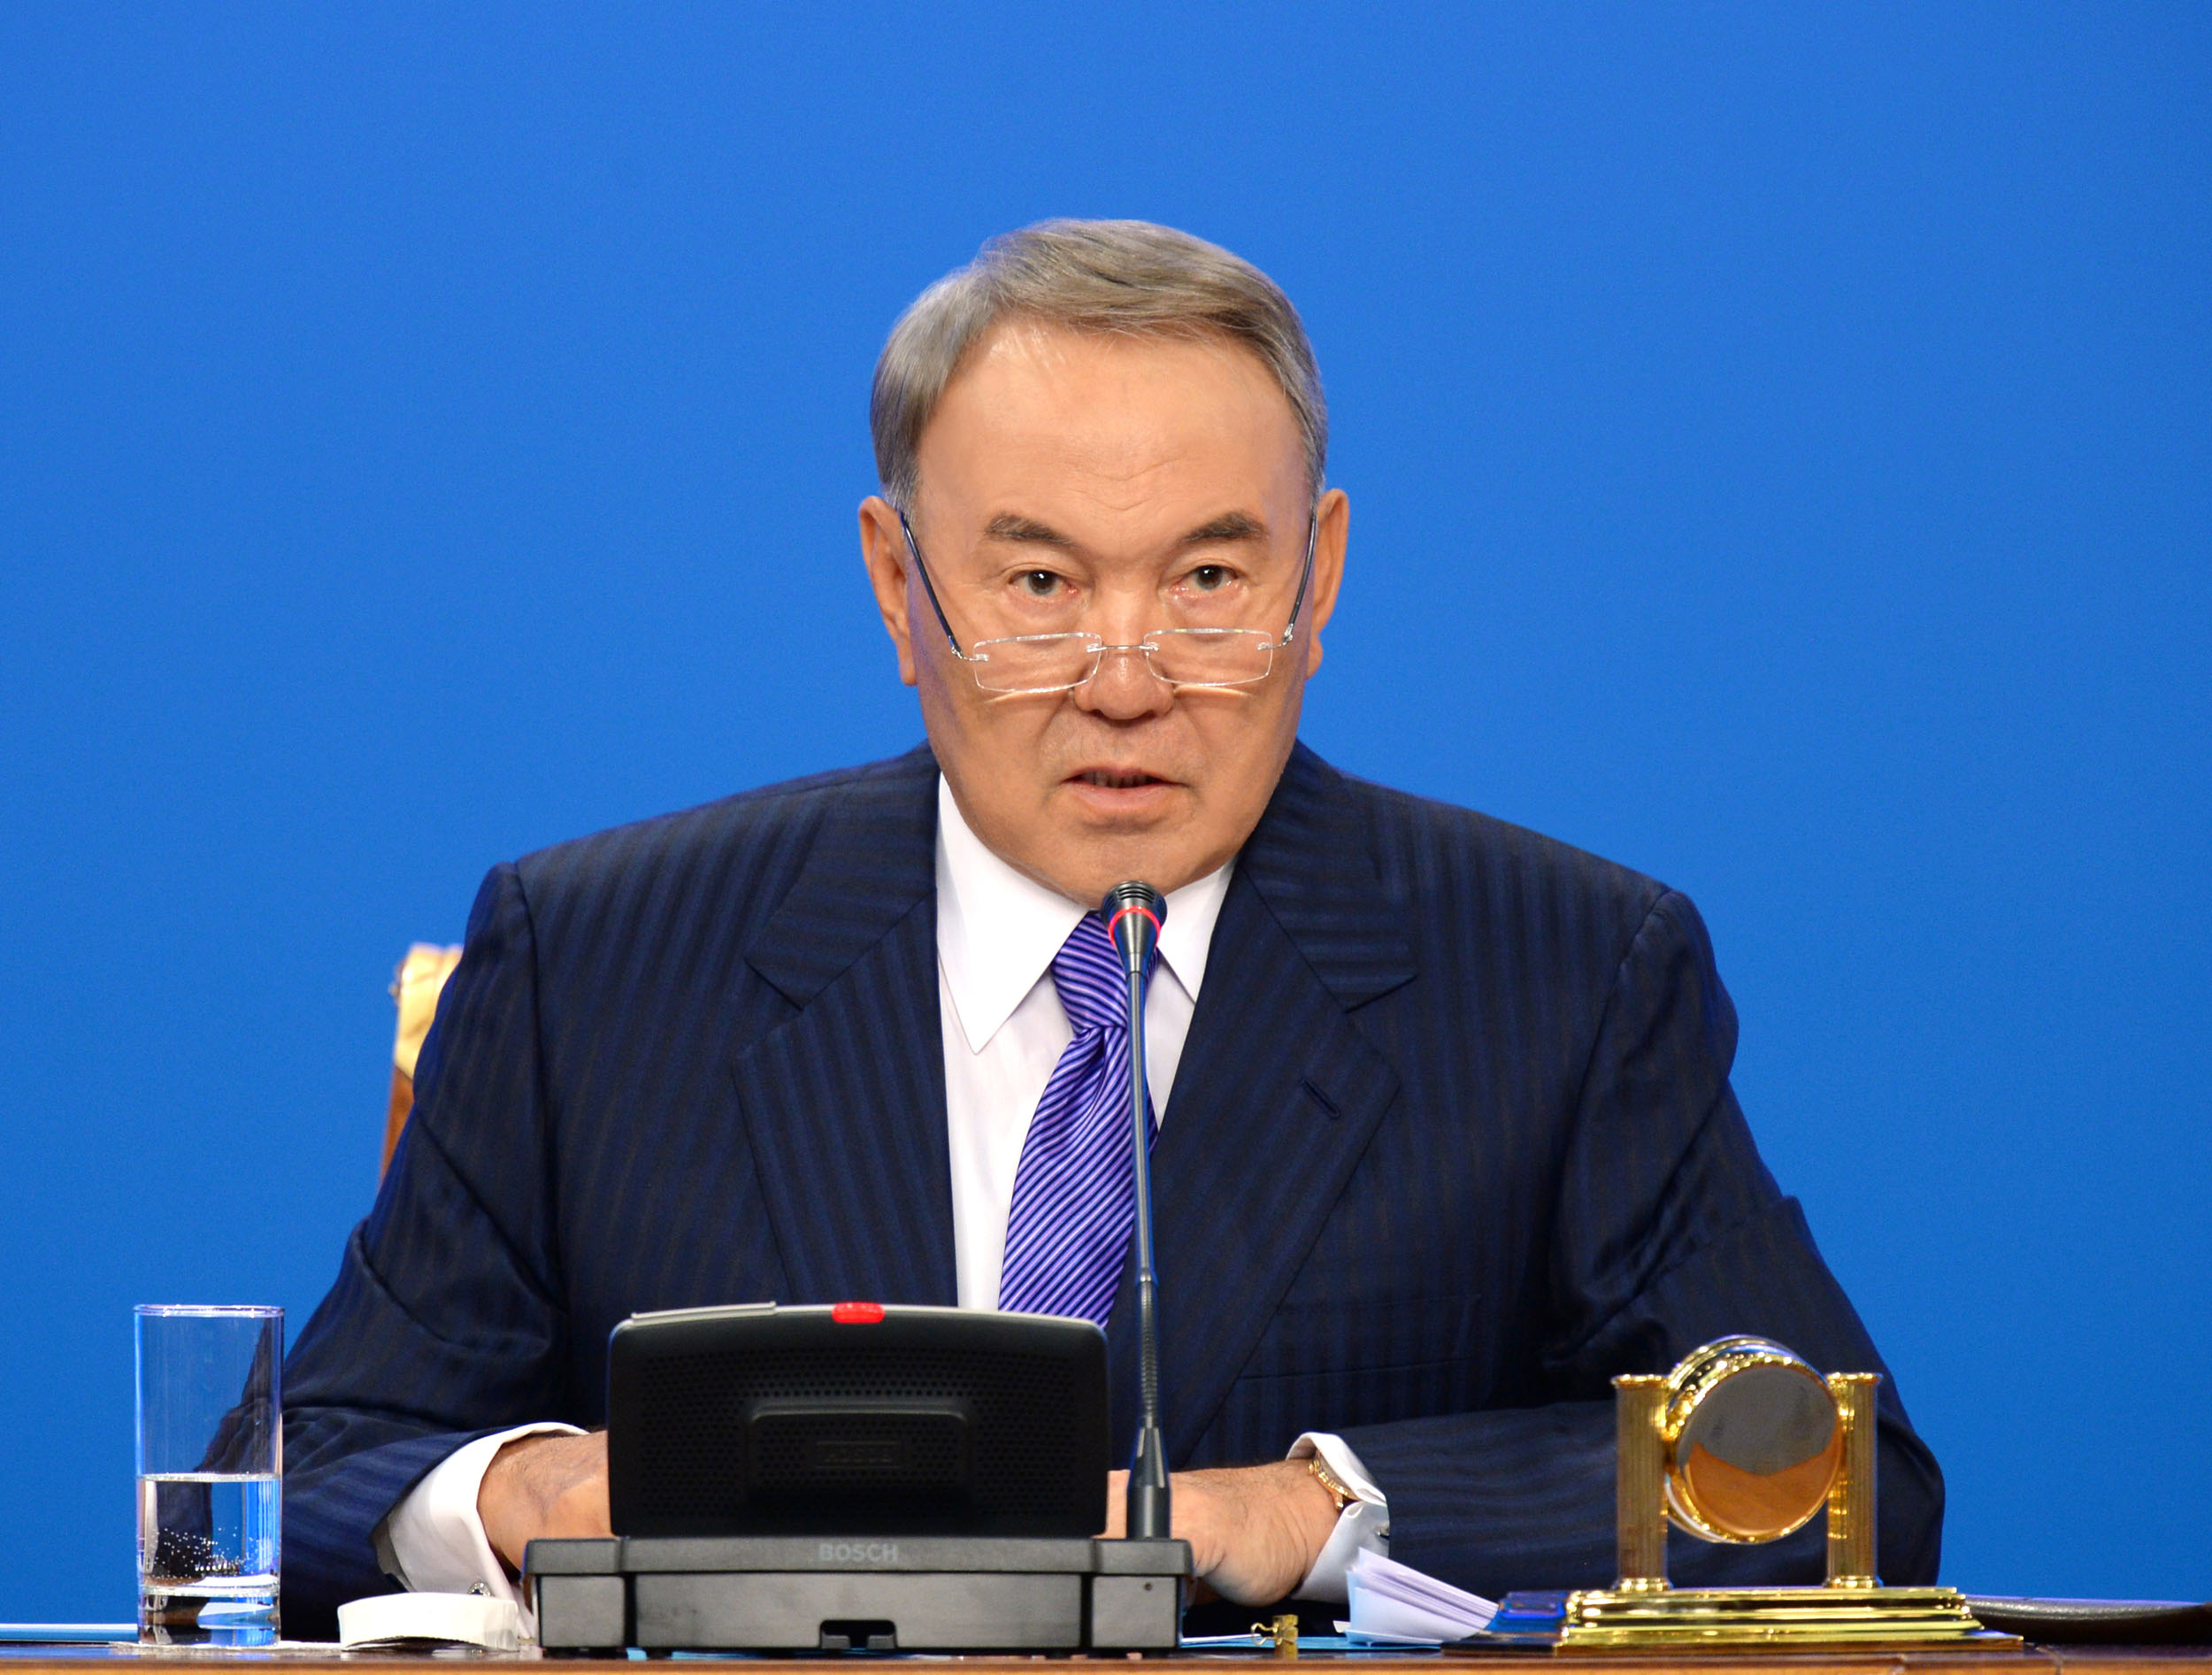 Під час вітальної   мови   на Фестивалі етнокультурних об'єднань Президент Казахстану звернувся до молоді і закликав їх працювати чесно, передає кореспондент   BNews